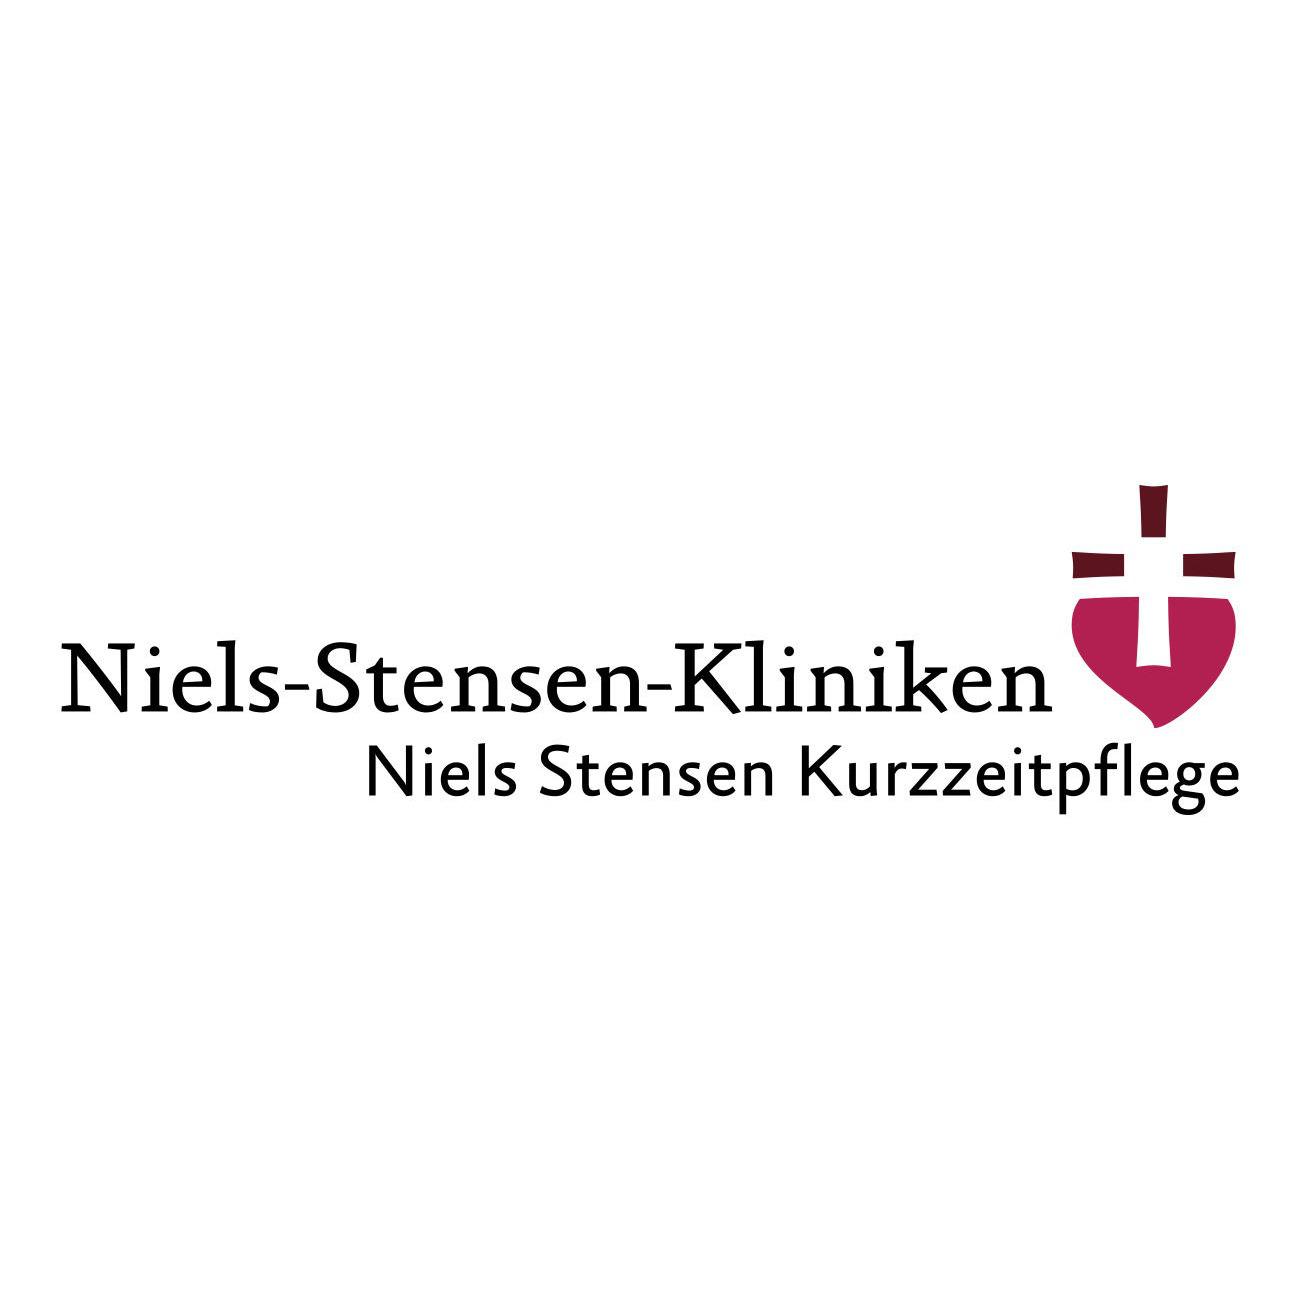 Niels Stensen Kurzzeitpflege Osnabrück Logo